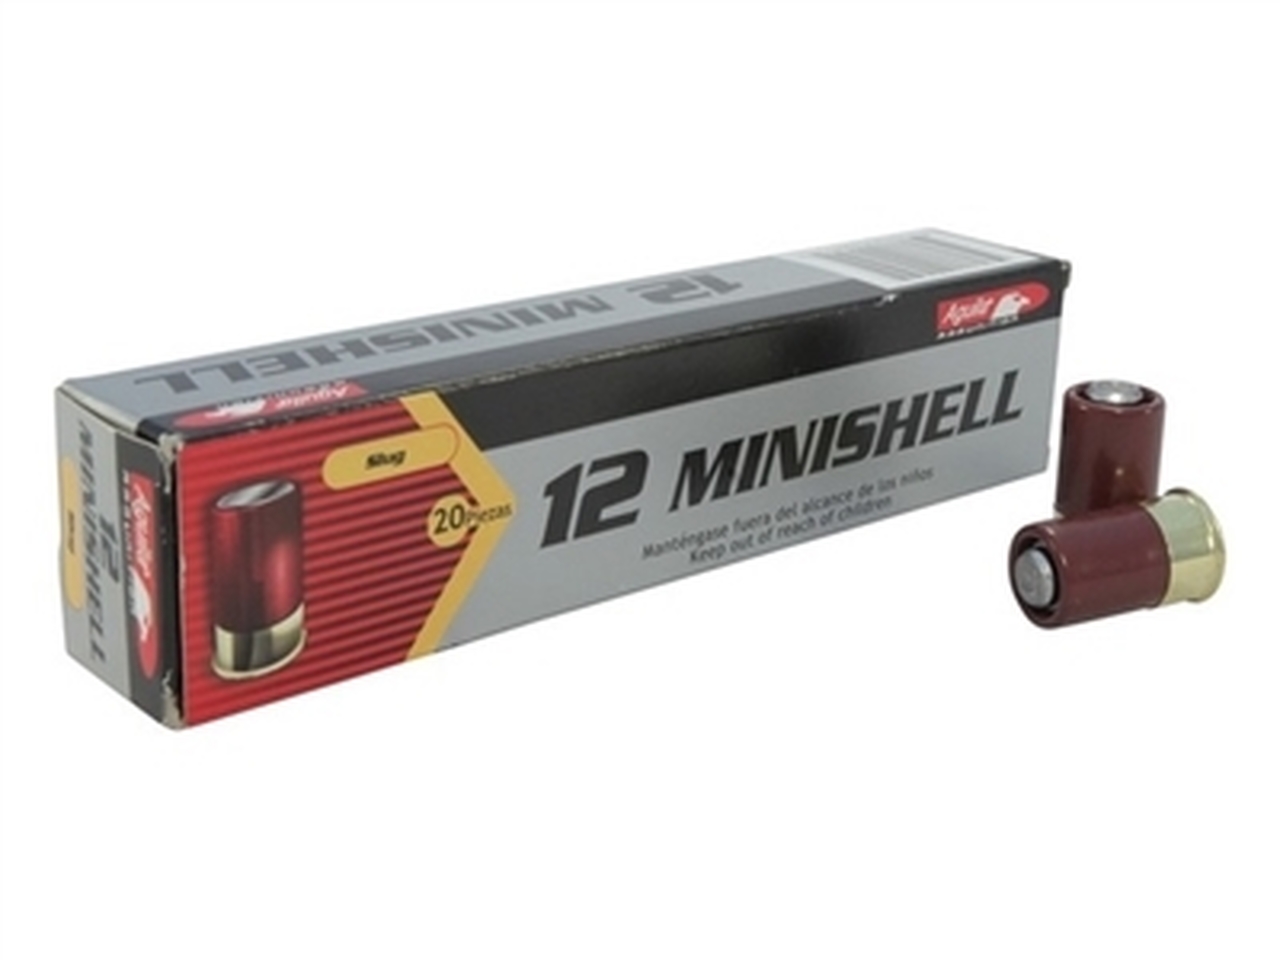 Minishell Ammunition 12 Gauge 1-3/4" 7/8 oz Lead Slug 1250 fps CASE 500 rounds